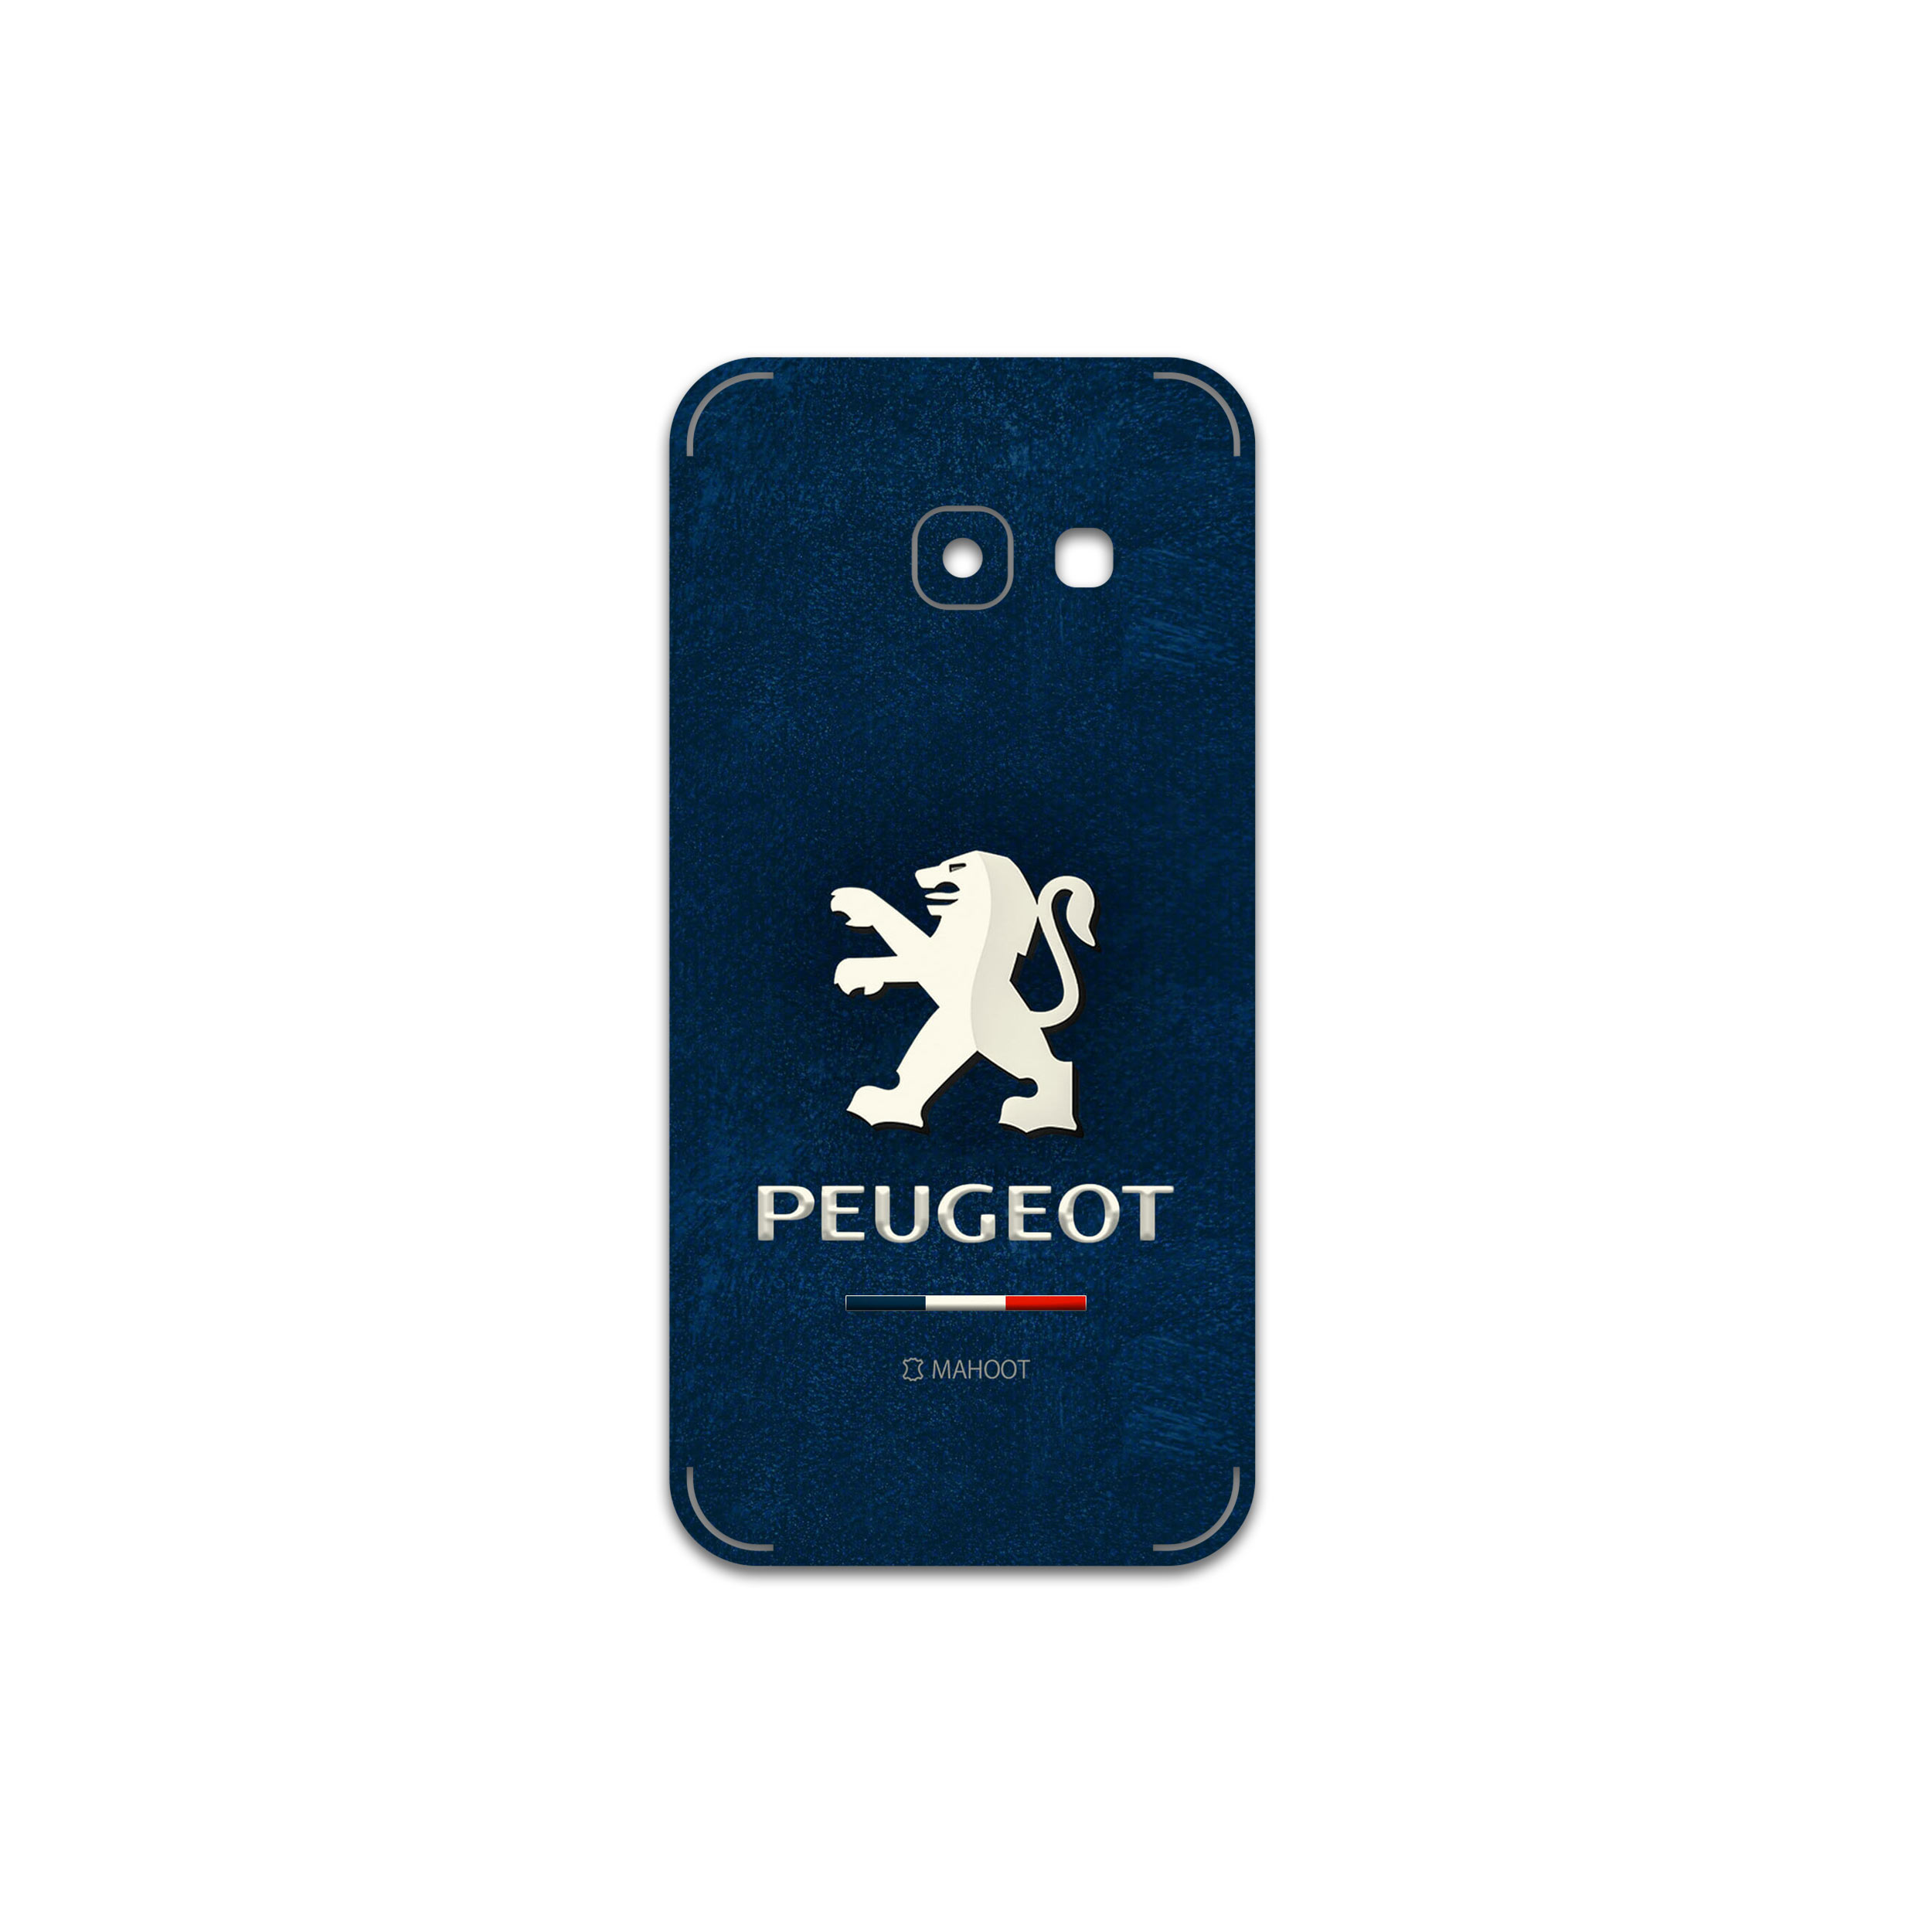 نقد و بررسی برچسب پوششی ماهوت مدل Peugeot مناسب برای گوشی موبایل سامسونگ Galaxy A3 2017 توسط خریداران